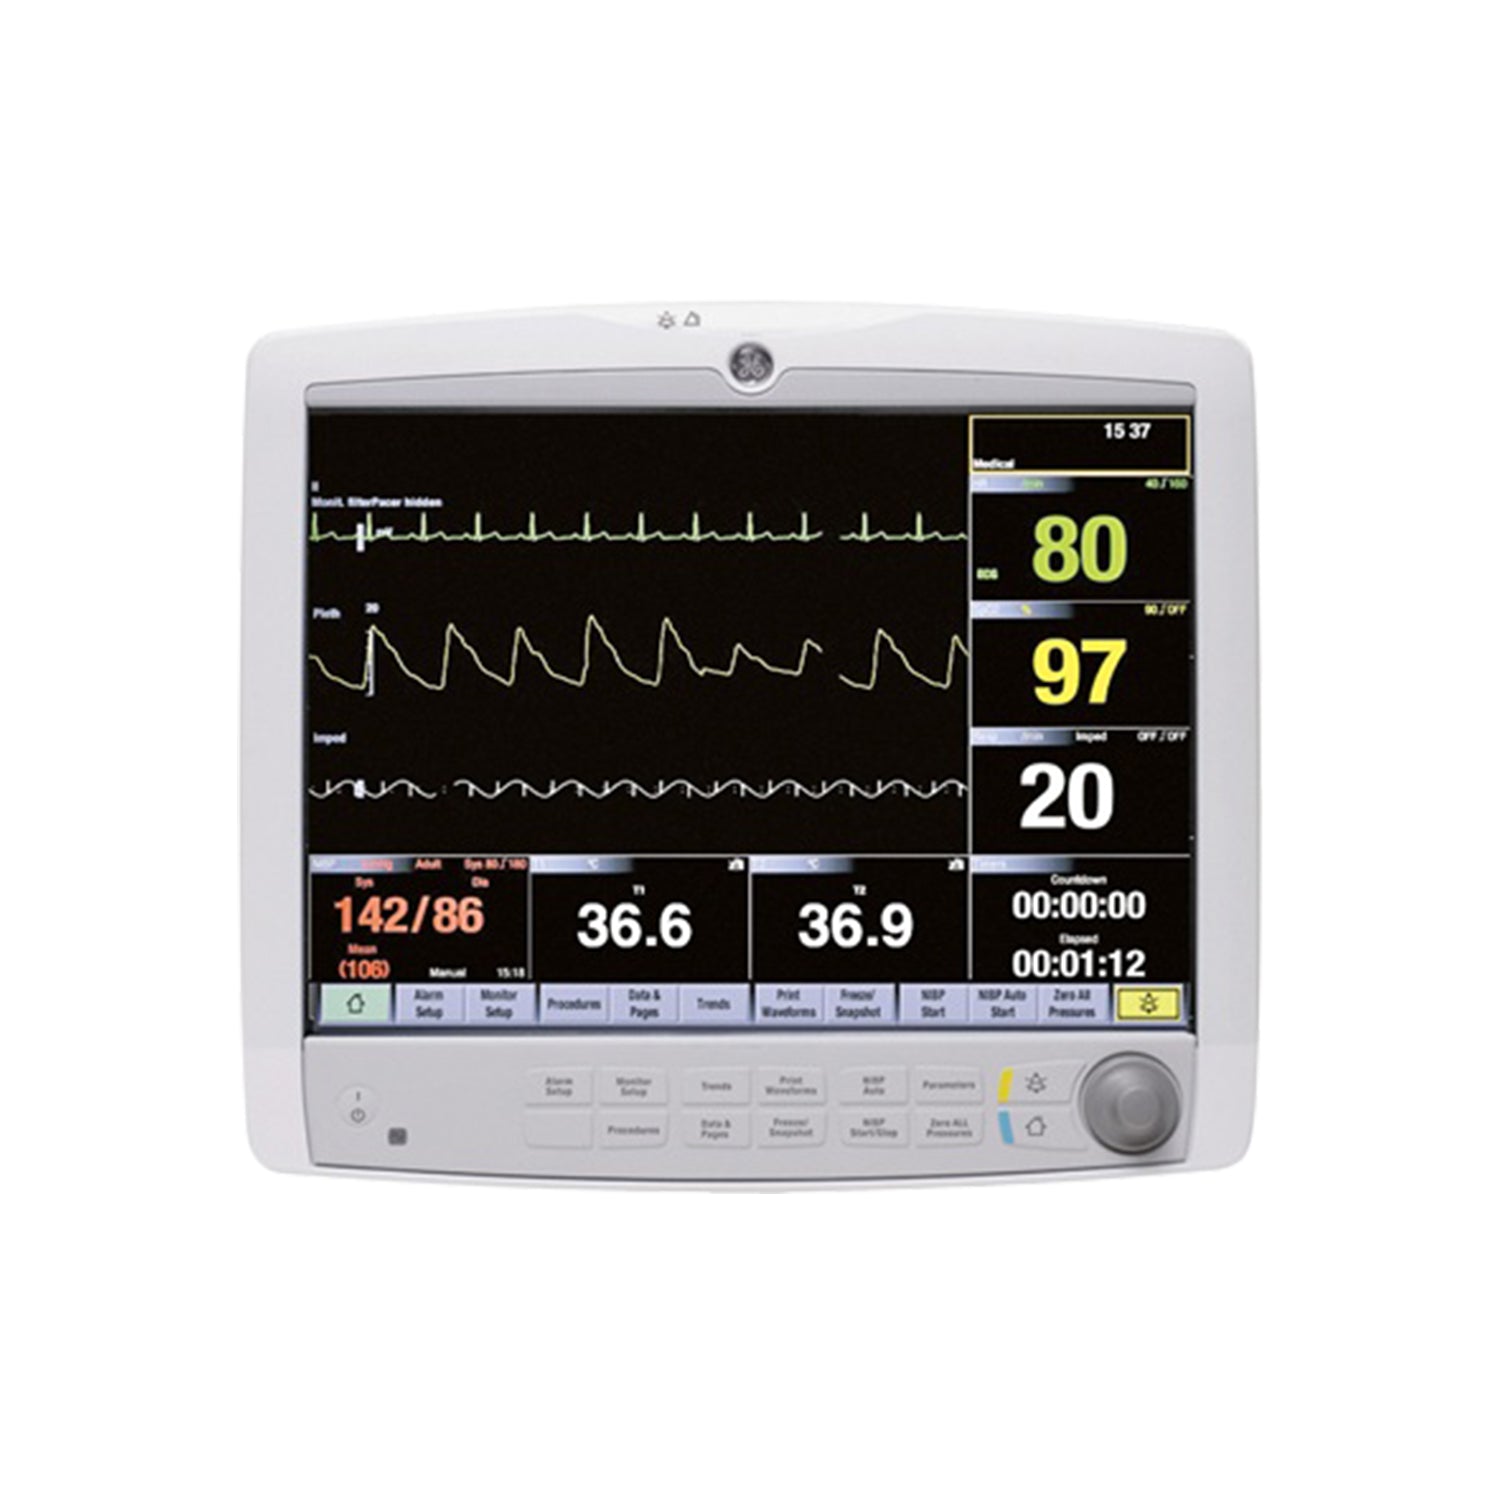 GE CARESCAPE B850 Patient Monitor